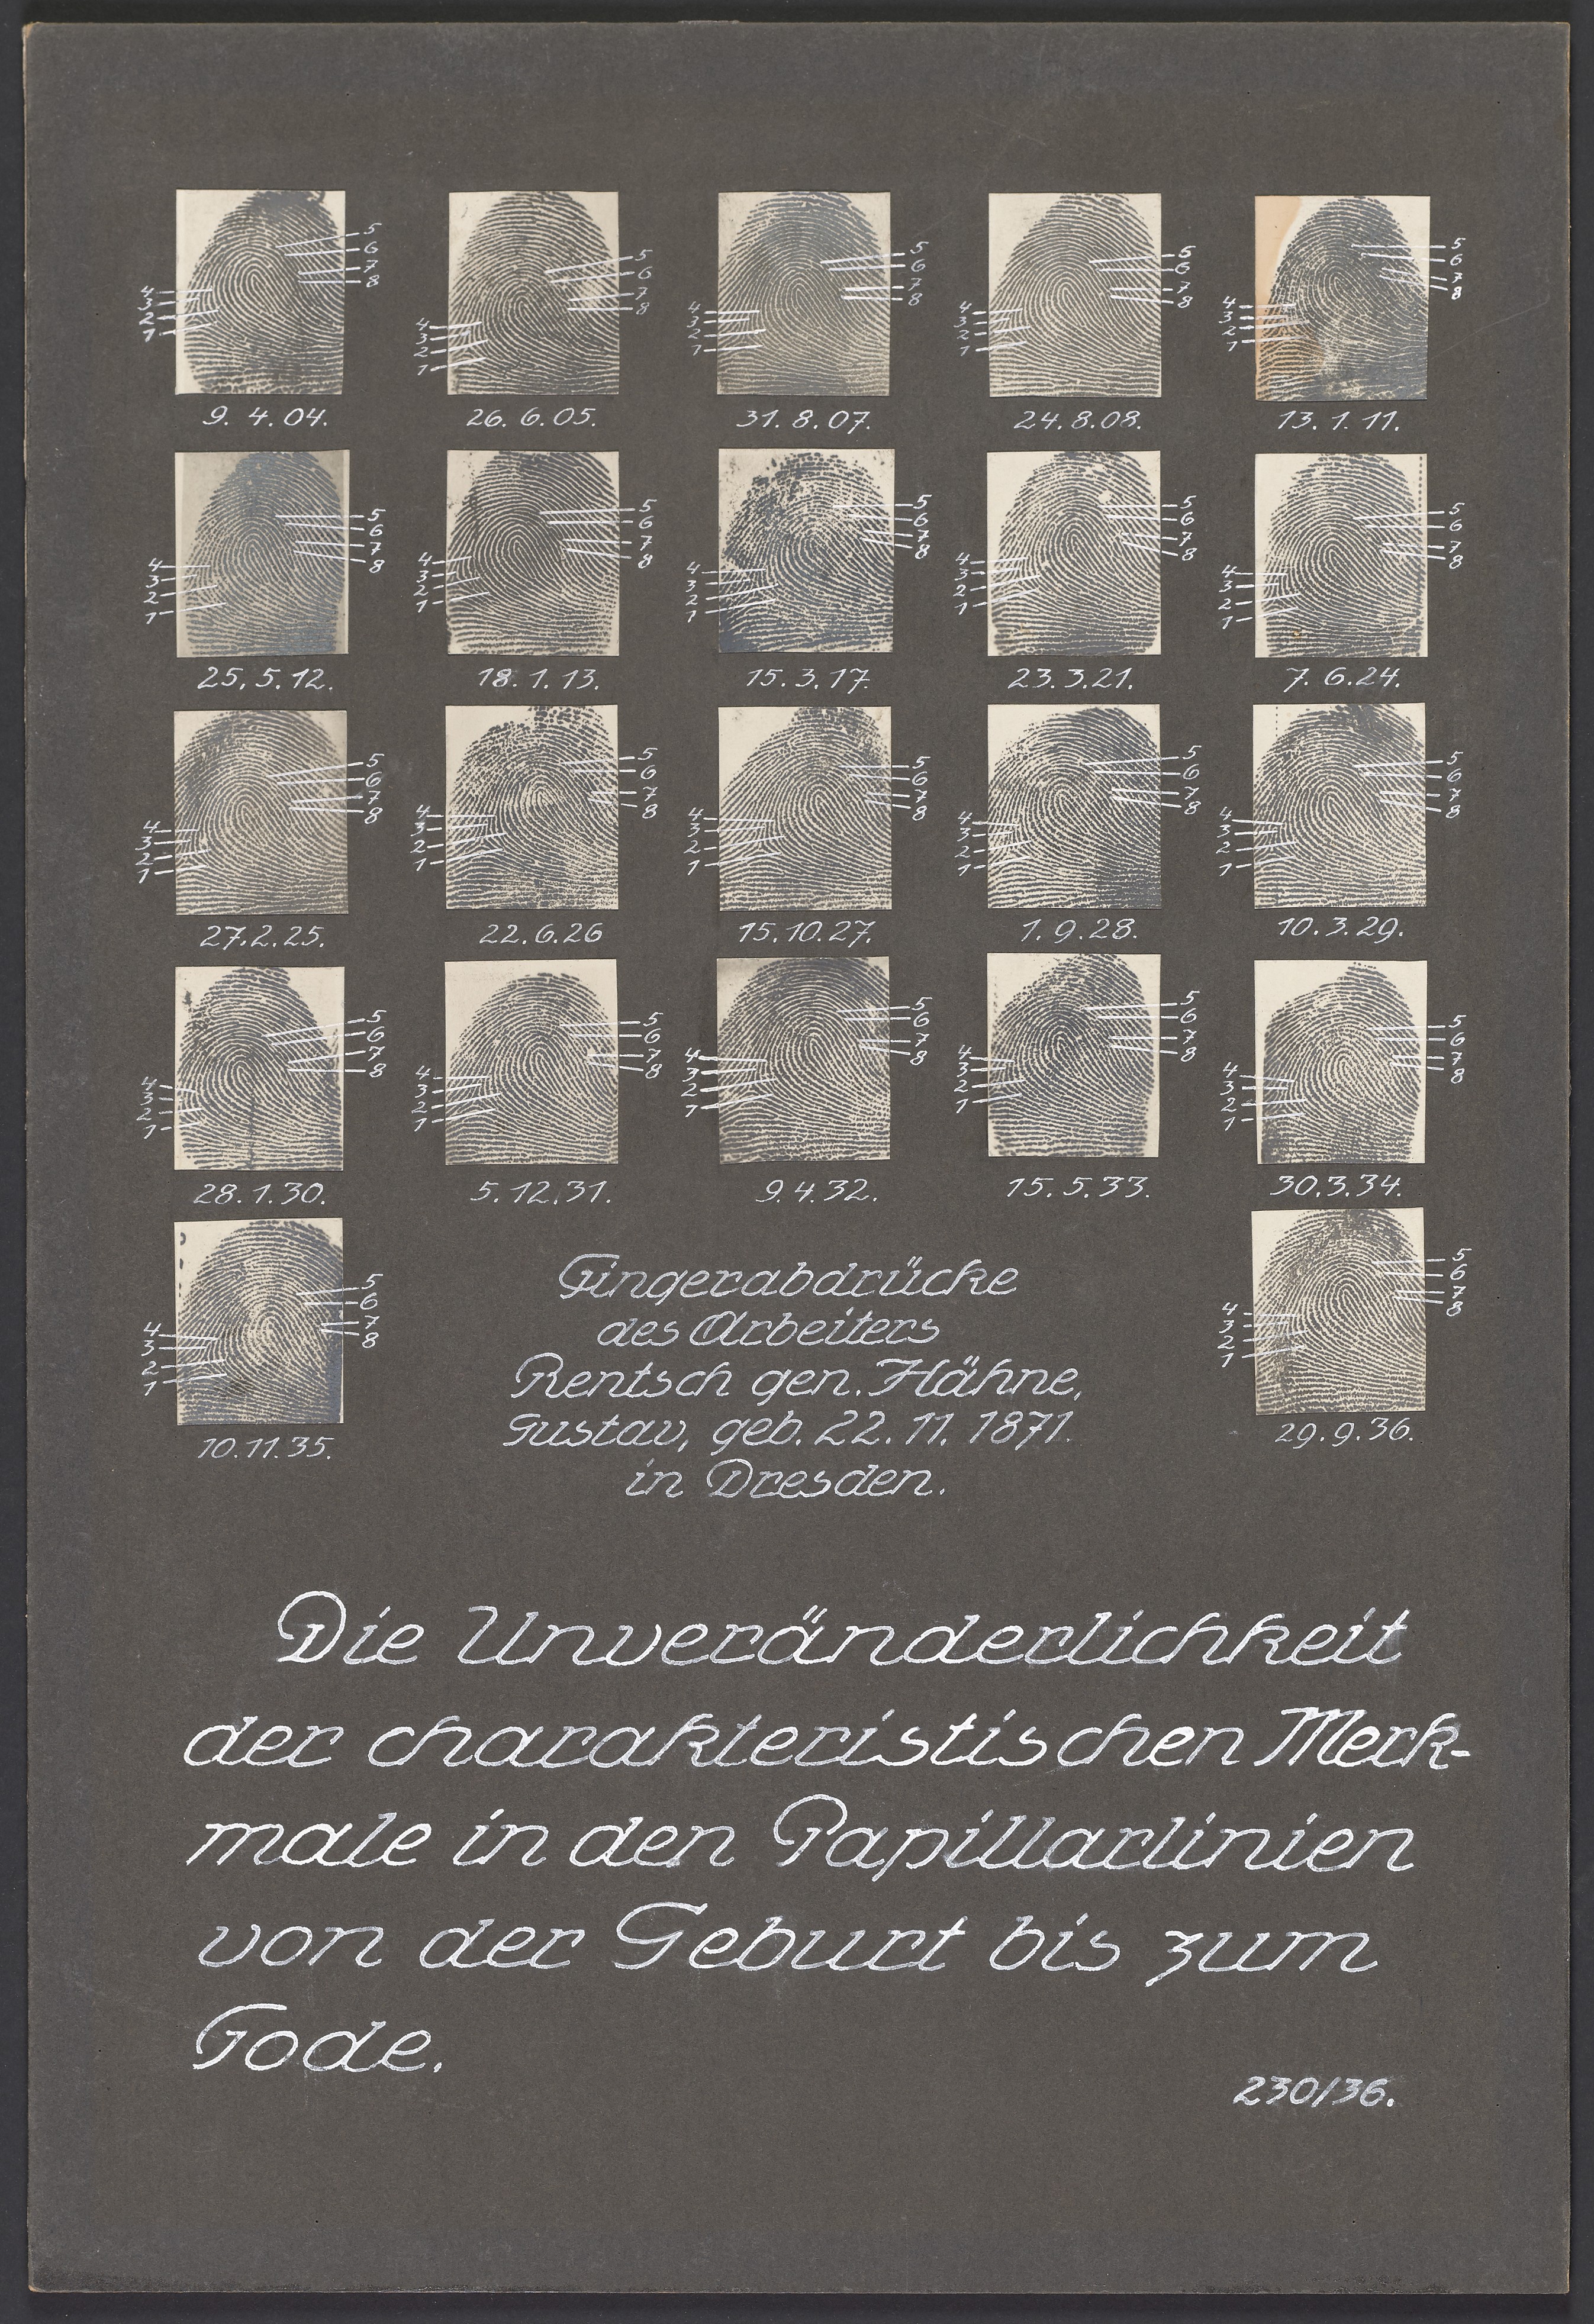 Lehrtafel "Fingerabdrücke des Arbeiters Rentsch" (Polizeidirektion Dresden RR-F)